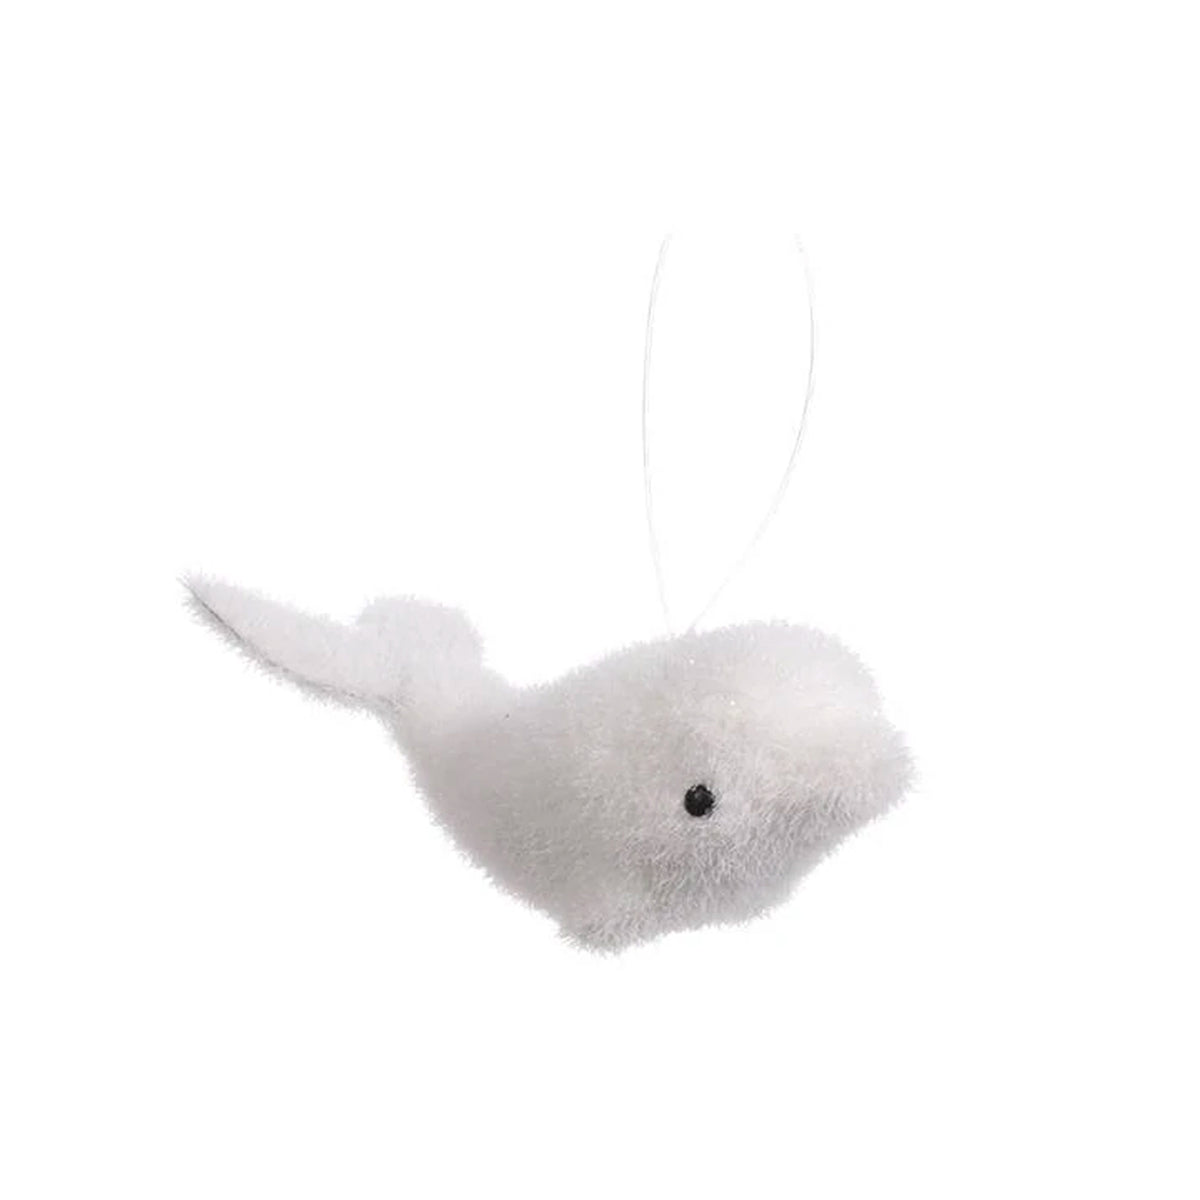 Dolphin / Seal 10 cms